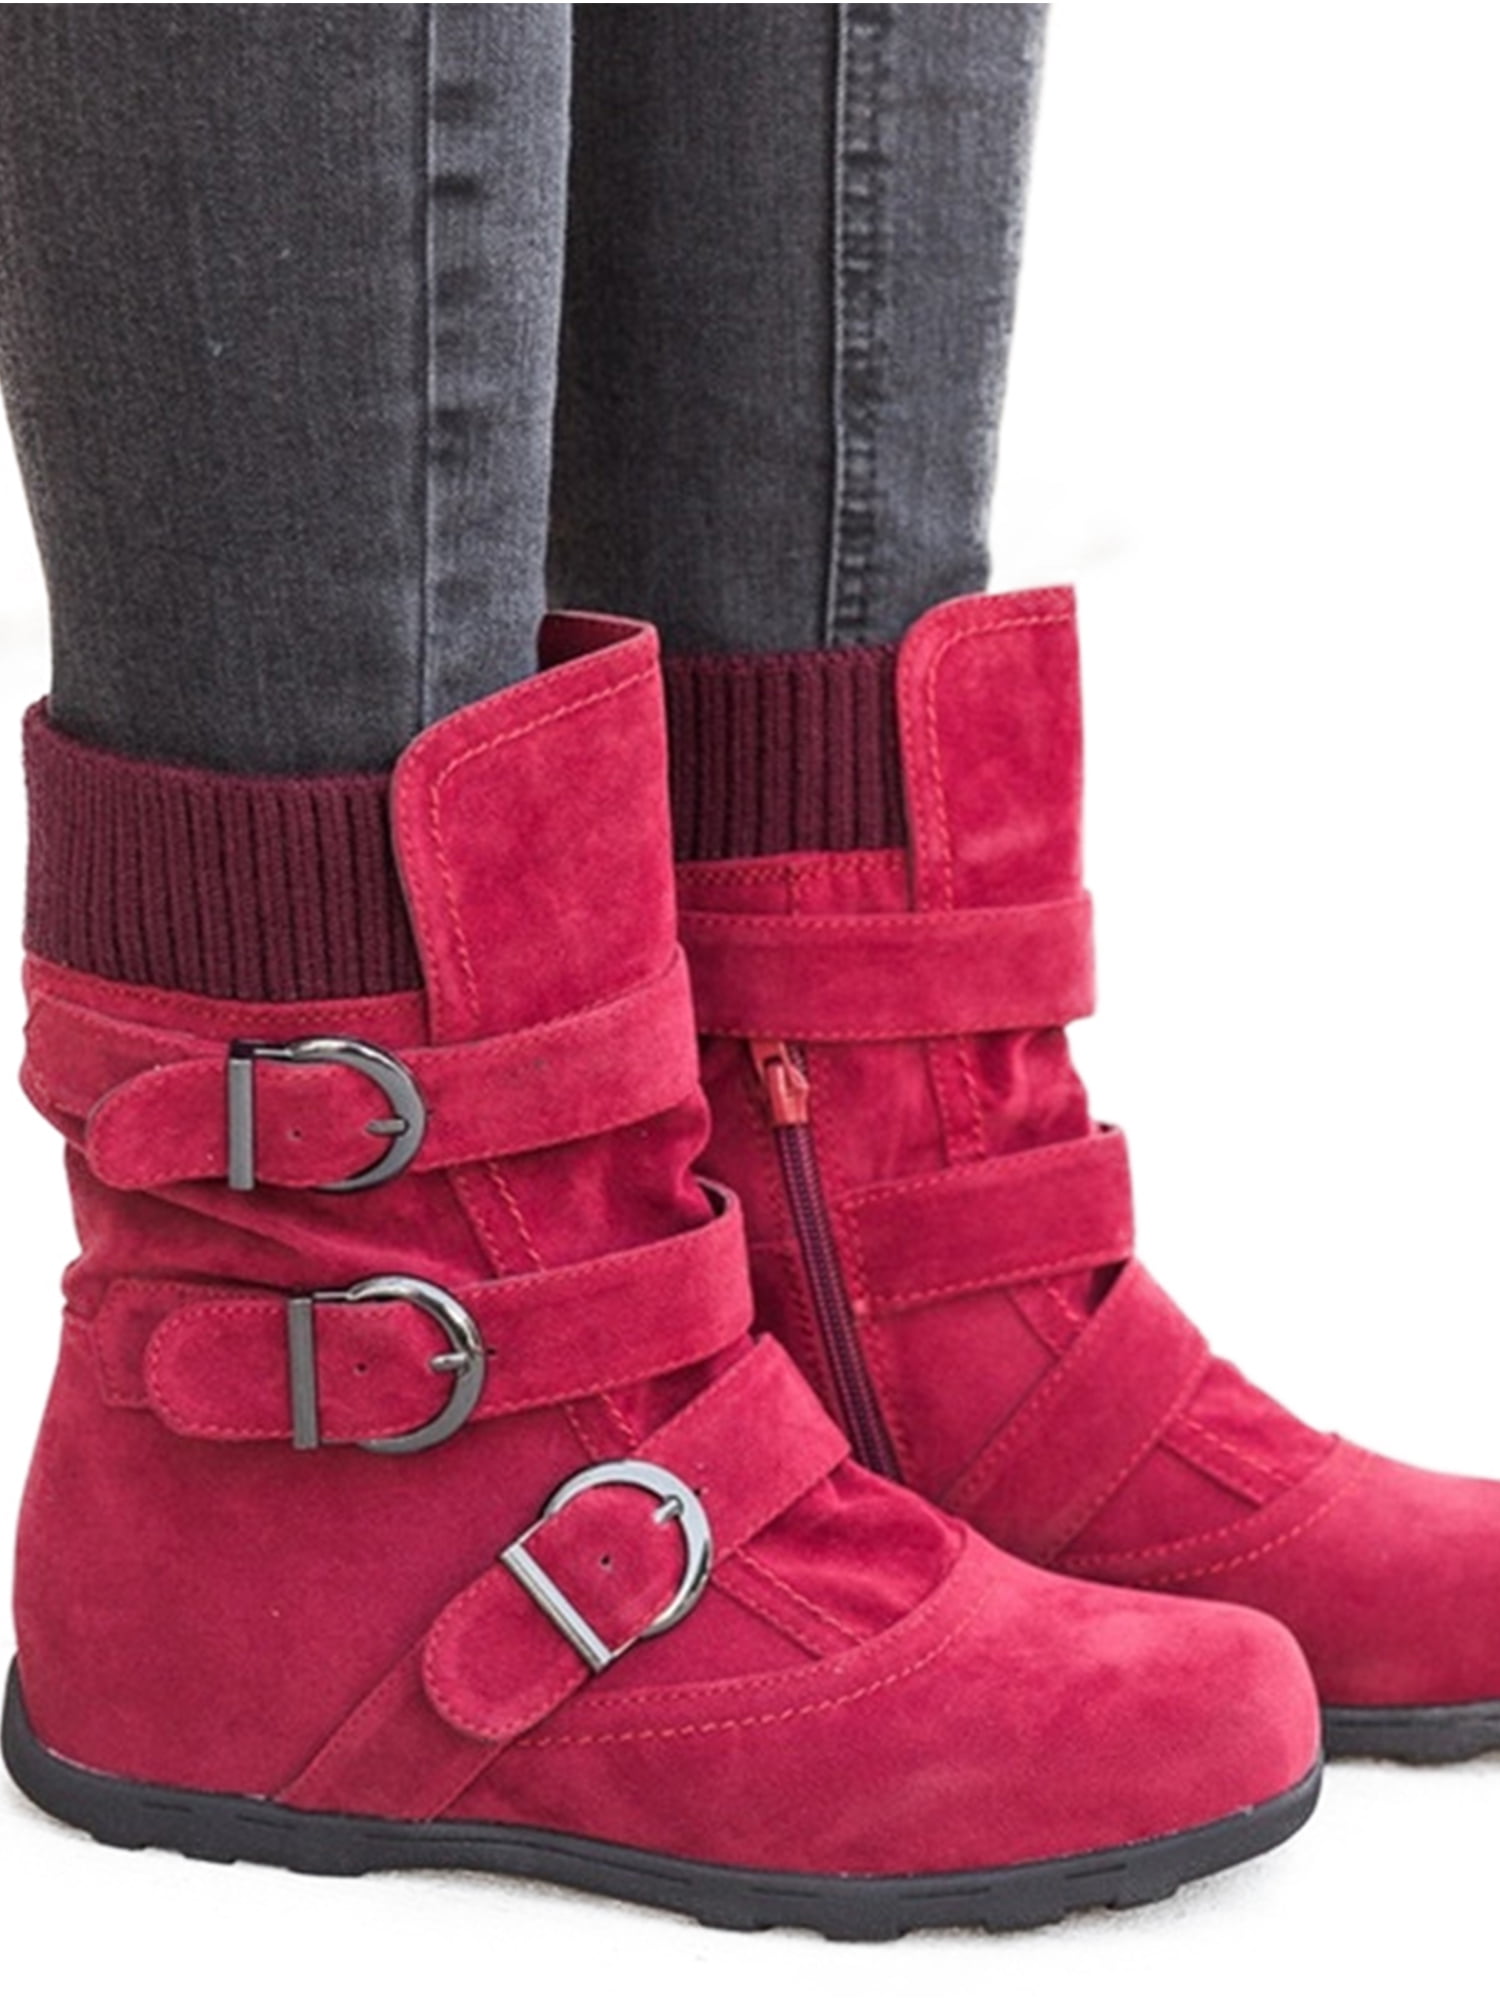 womens winter boots walmart